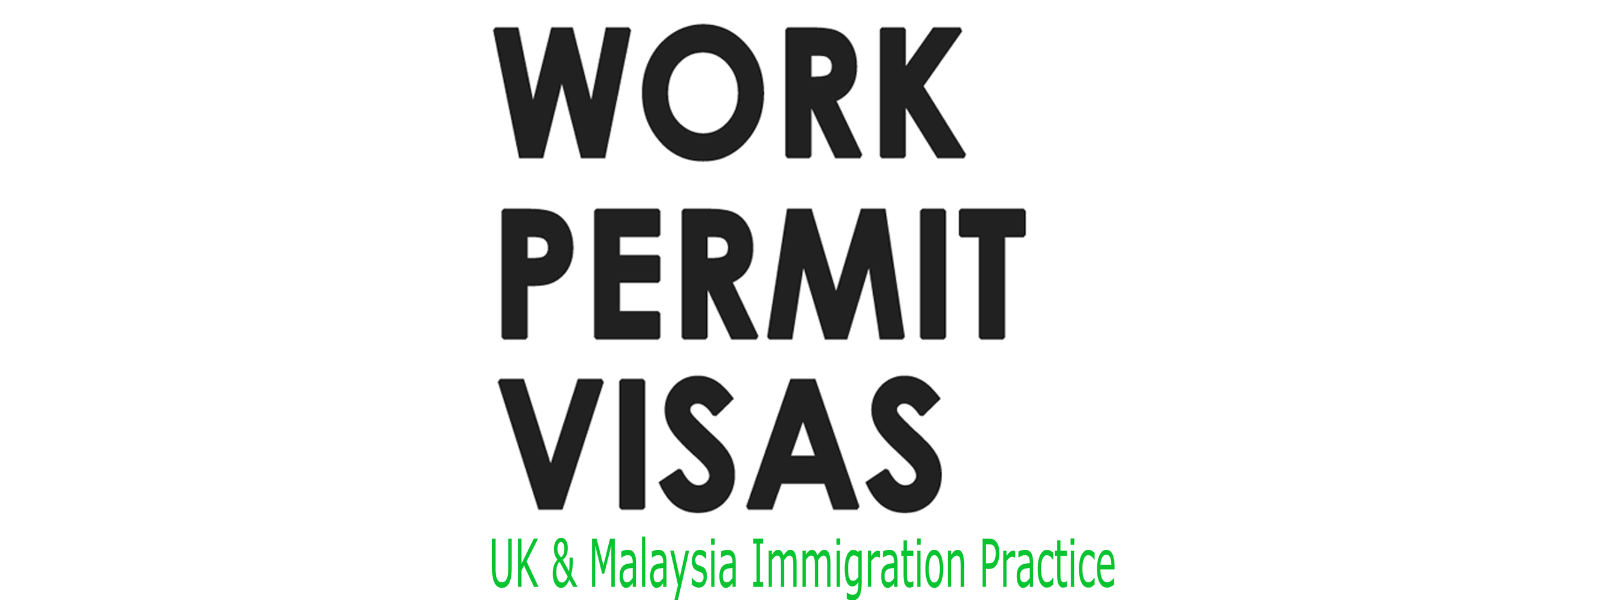 Work Permit Visas